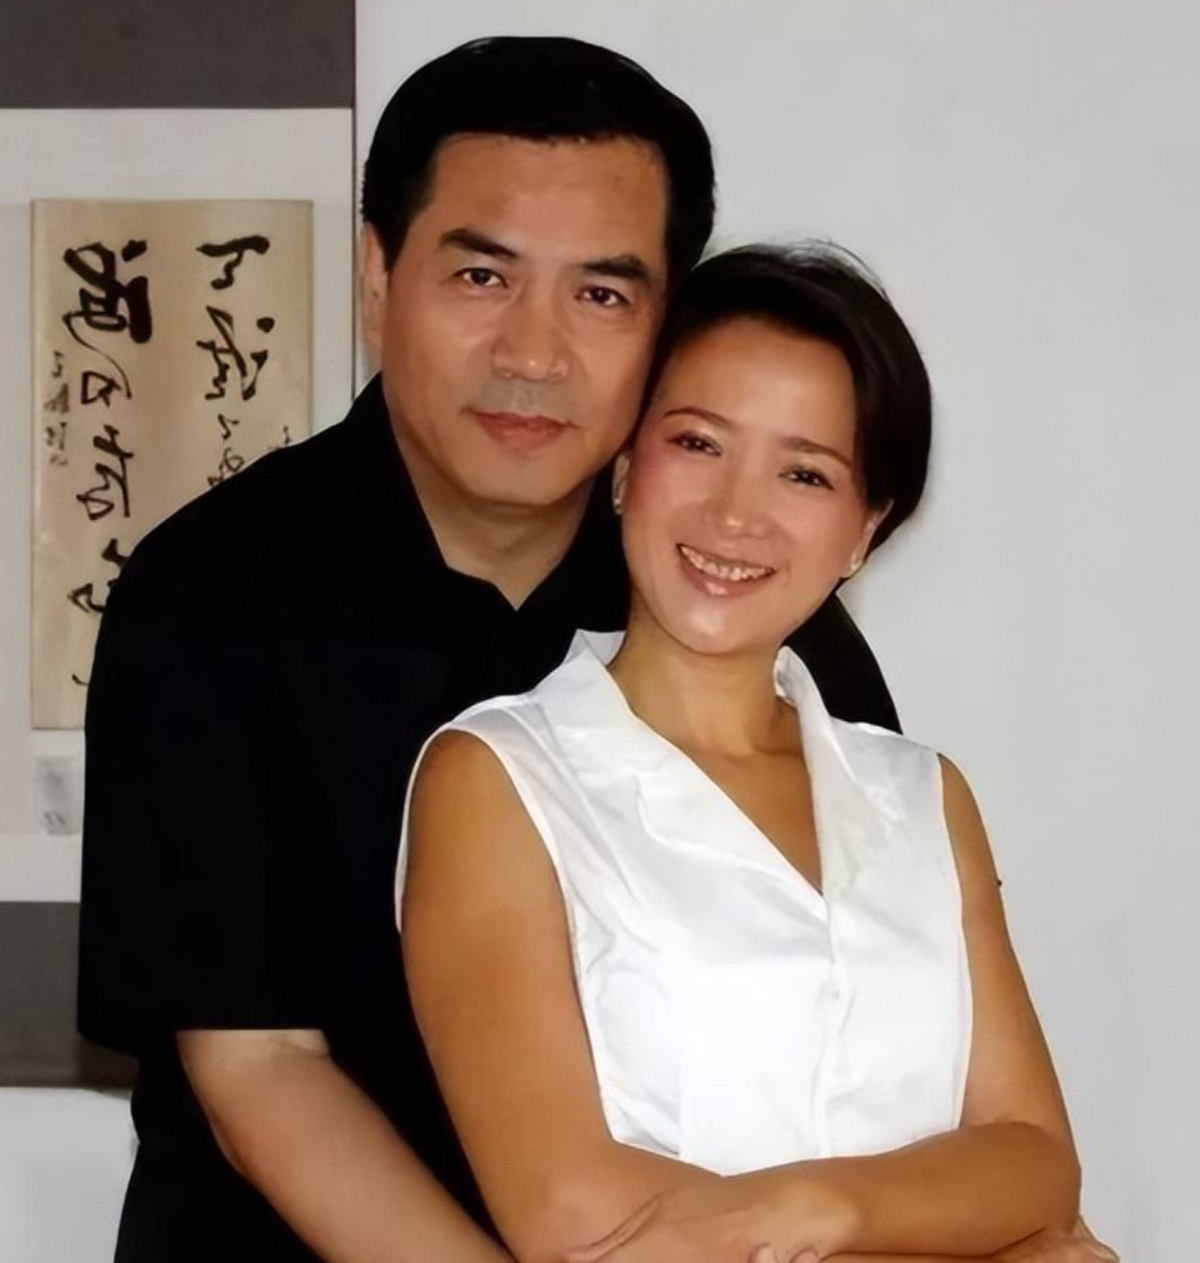 何晴与老公廖京生的合照真是幸福溢出了屏幕,甜蜜的婚后生活给二人